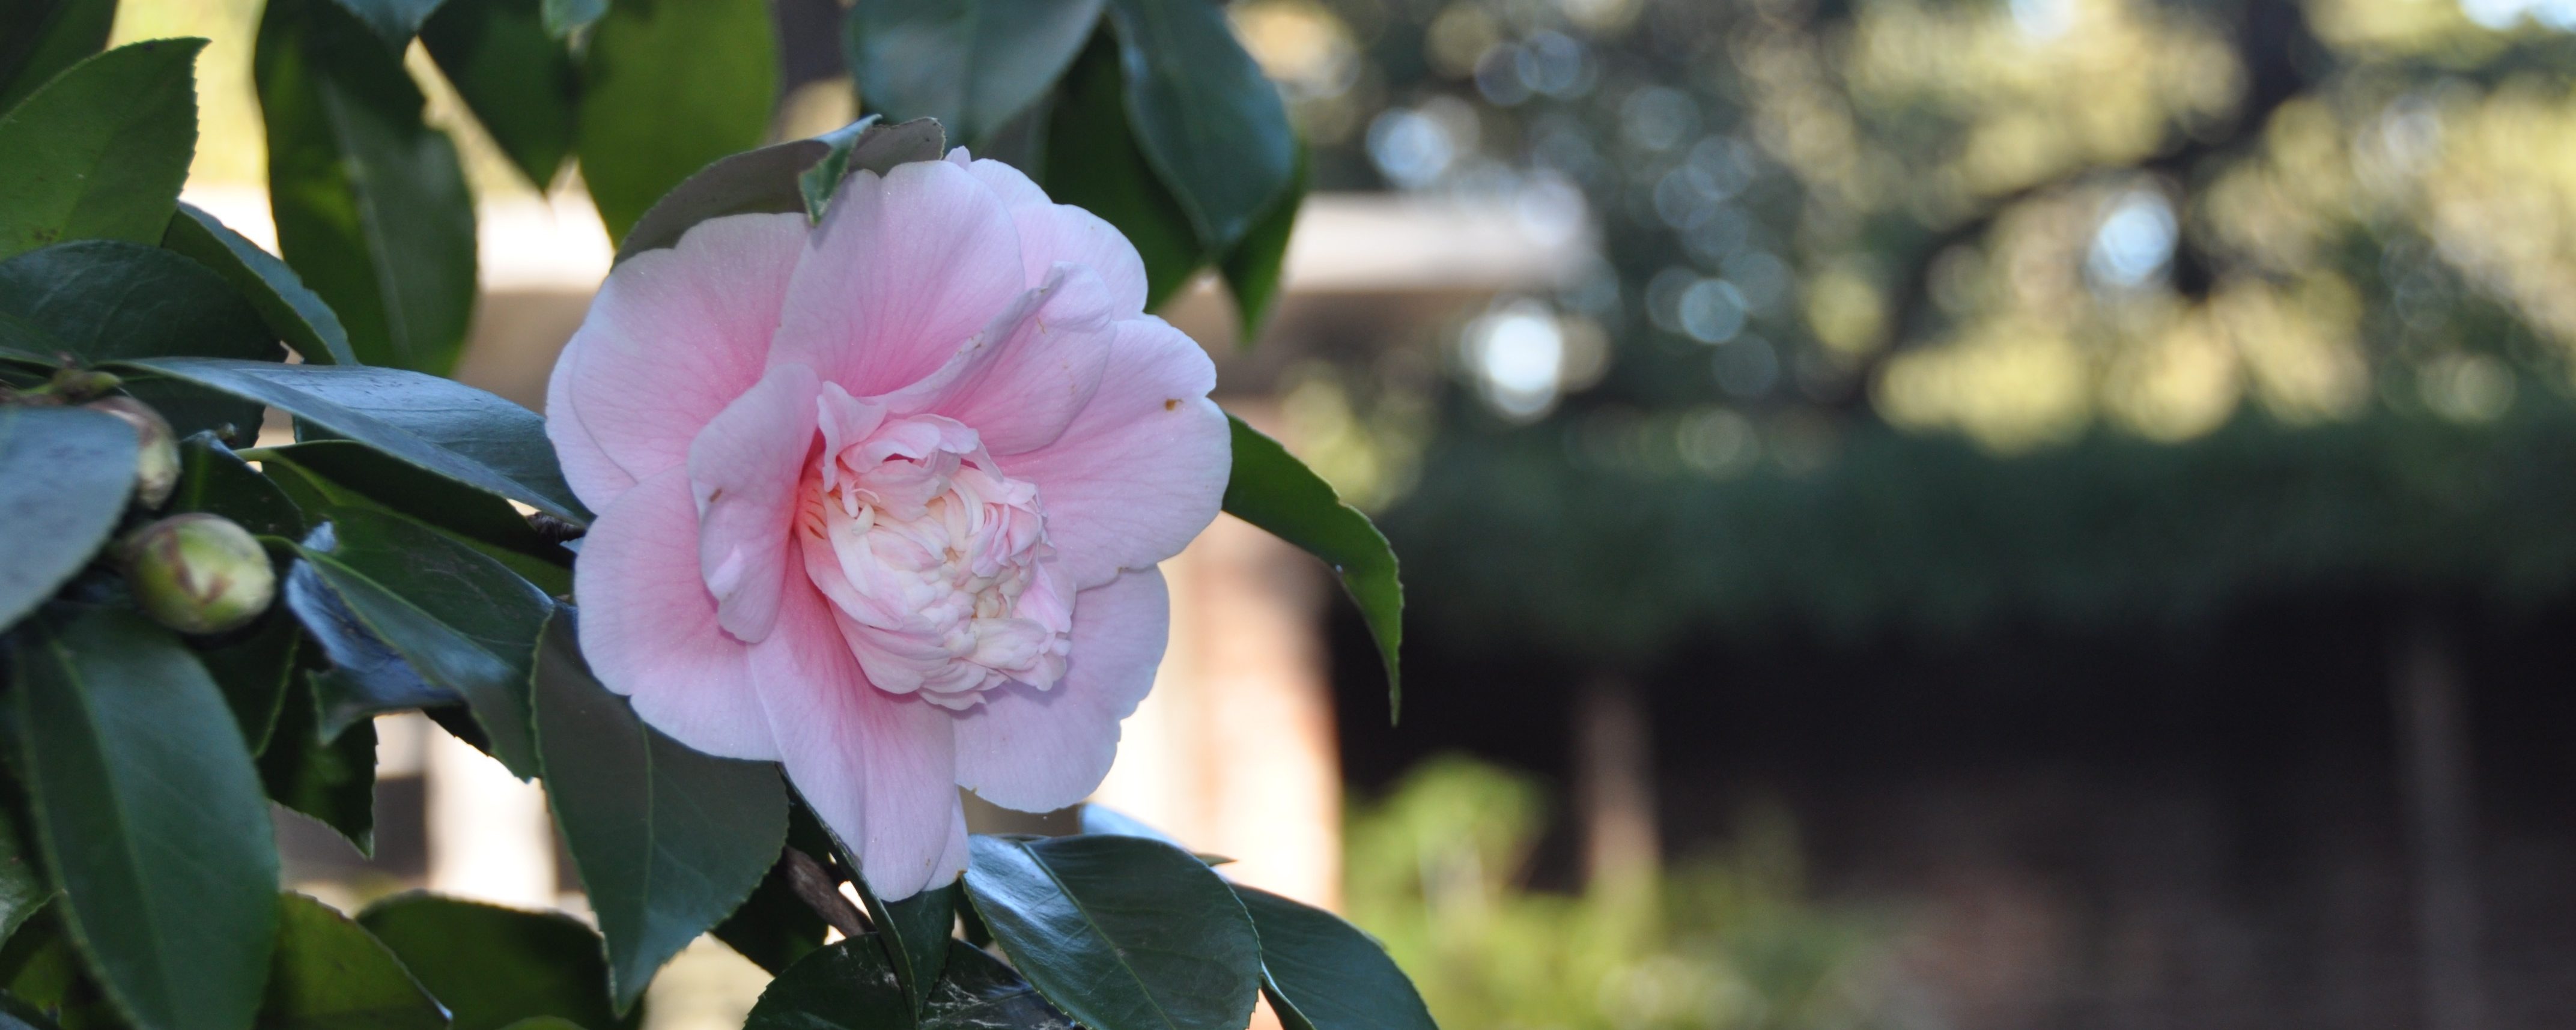 Camellia japonica ‘Alba Plena’ Great White